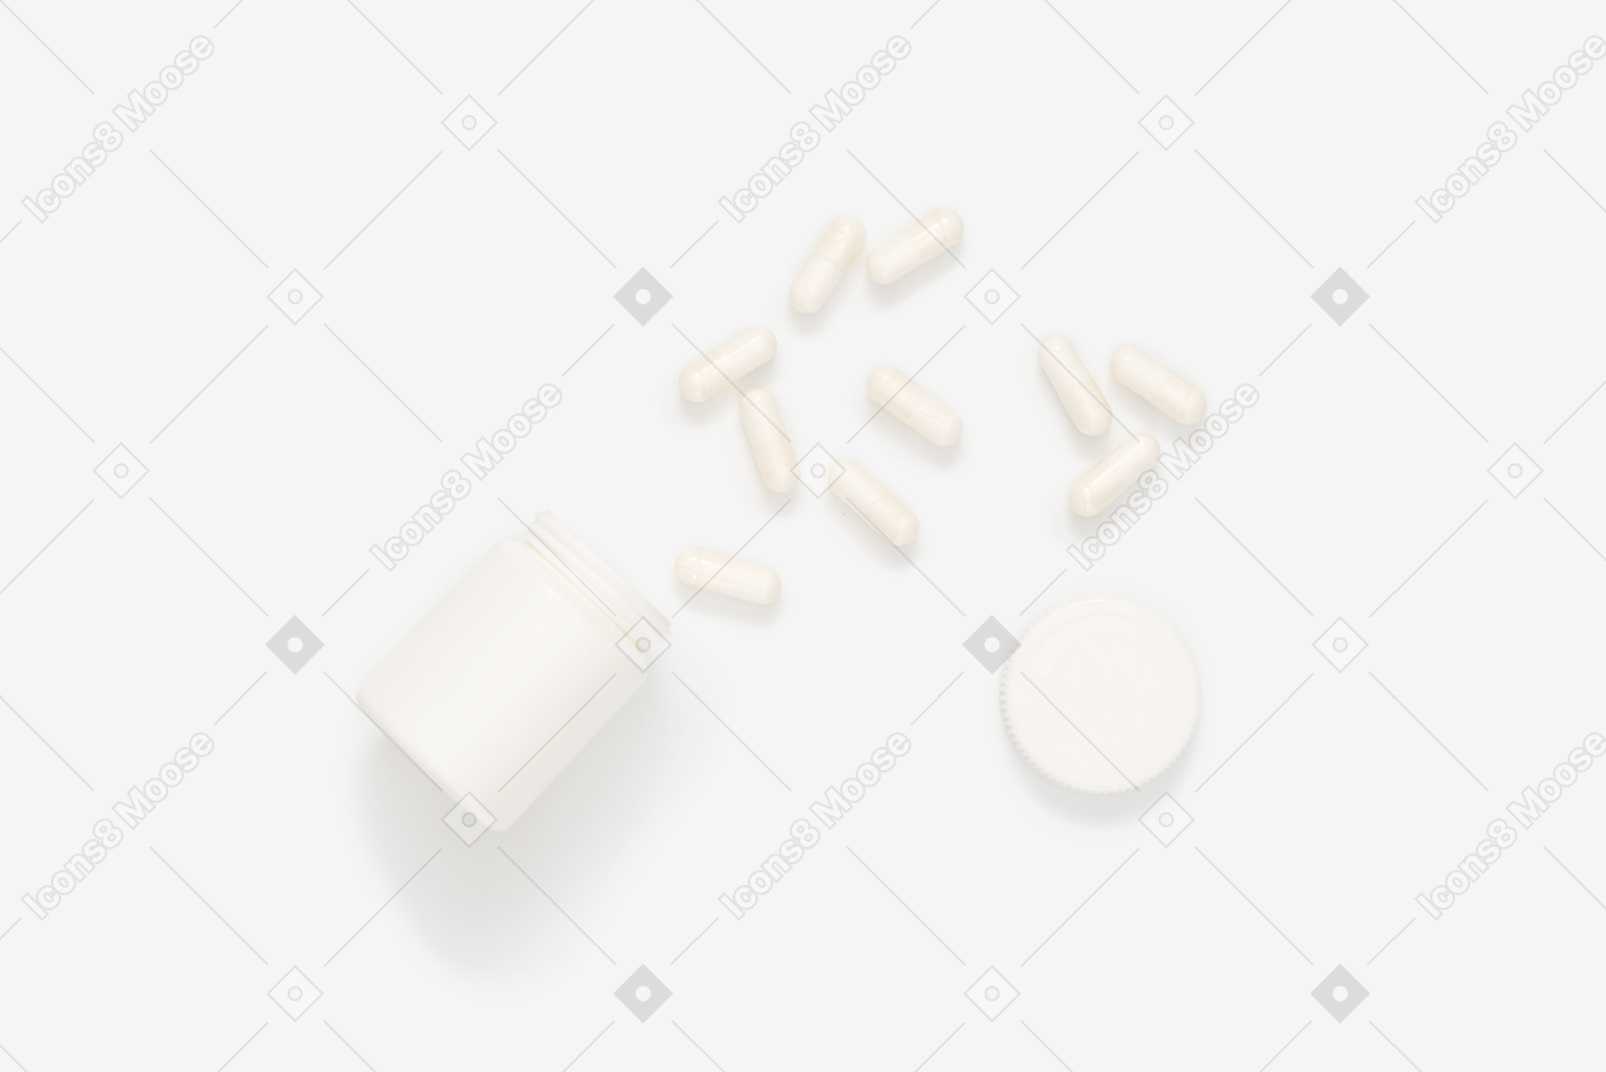 Pill bottle lying on its side